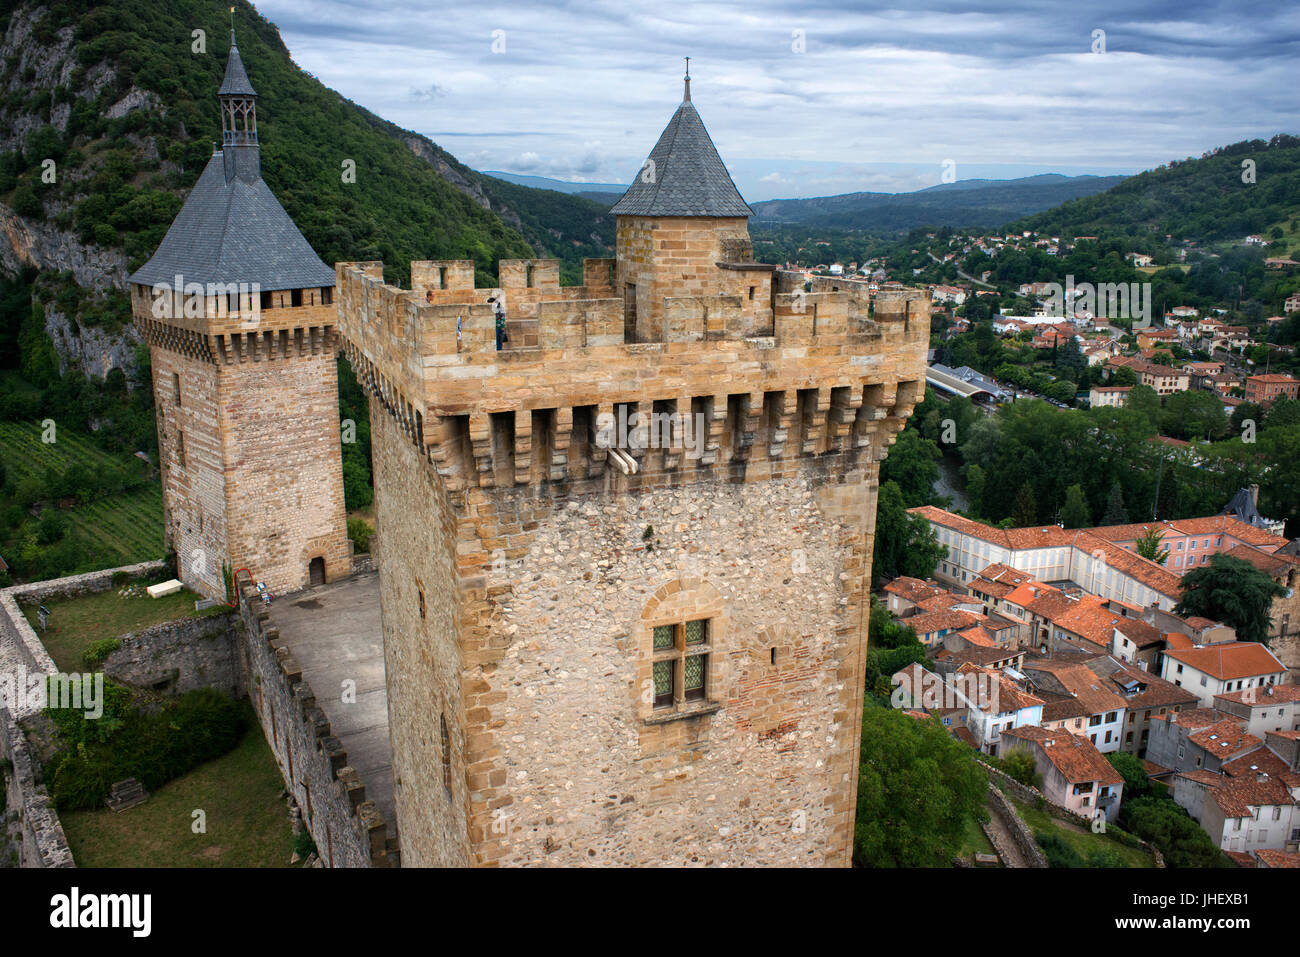 Château médiéval et de la ville de Foix, Aquitaine, Pyrénées, département de l'Ariège, France, Europe. Gaston Fébus contal Château des Comtes de Foix Banque D'Images